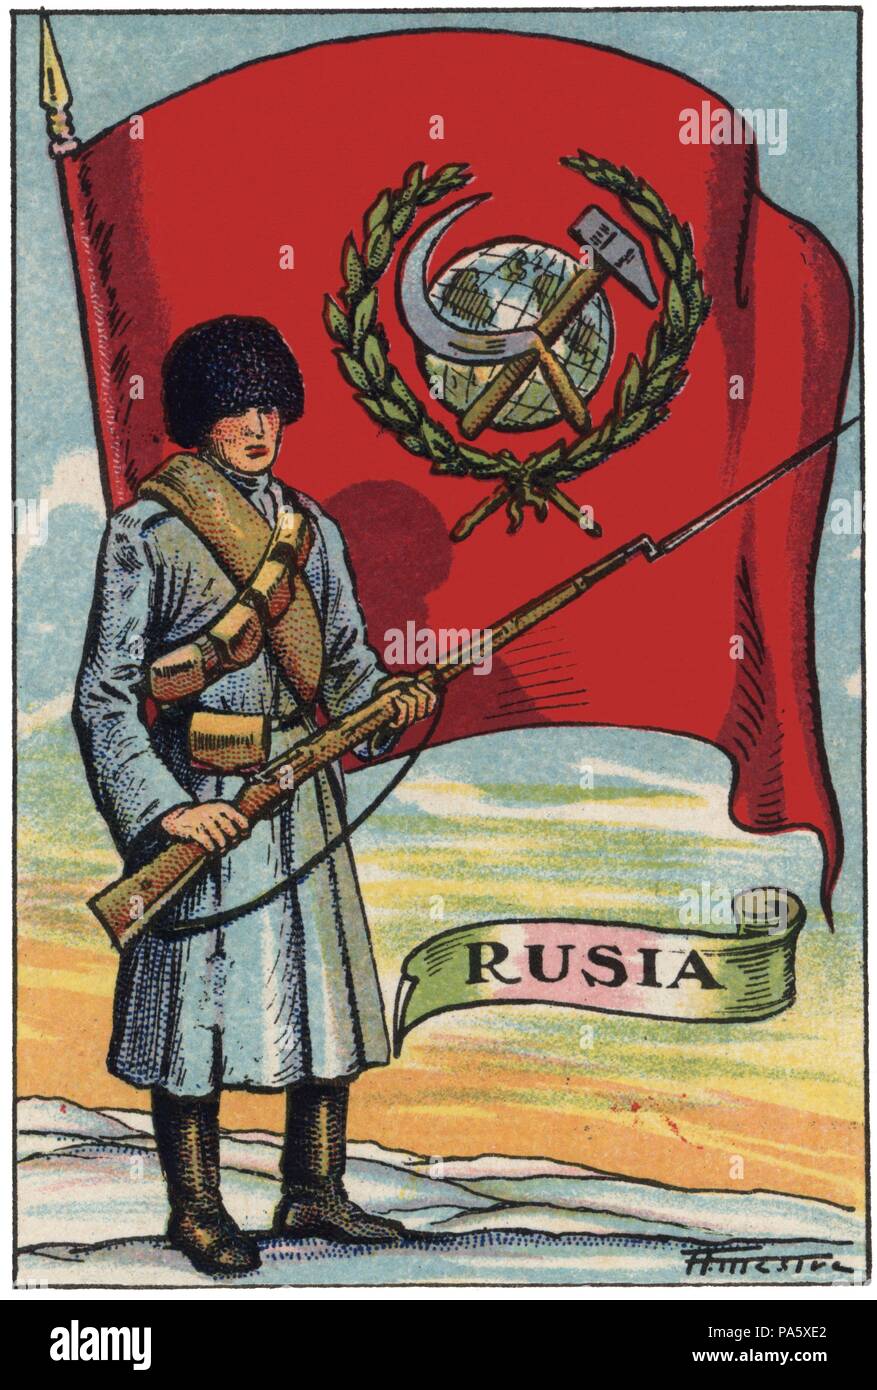 Bandera de Rusia y soldado de infantería. Colección de cromos Banderas del Universo. Años 1920. Stock Photo